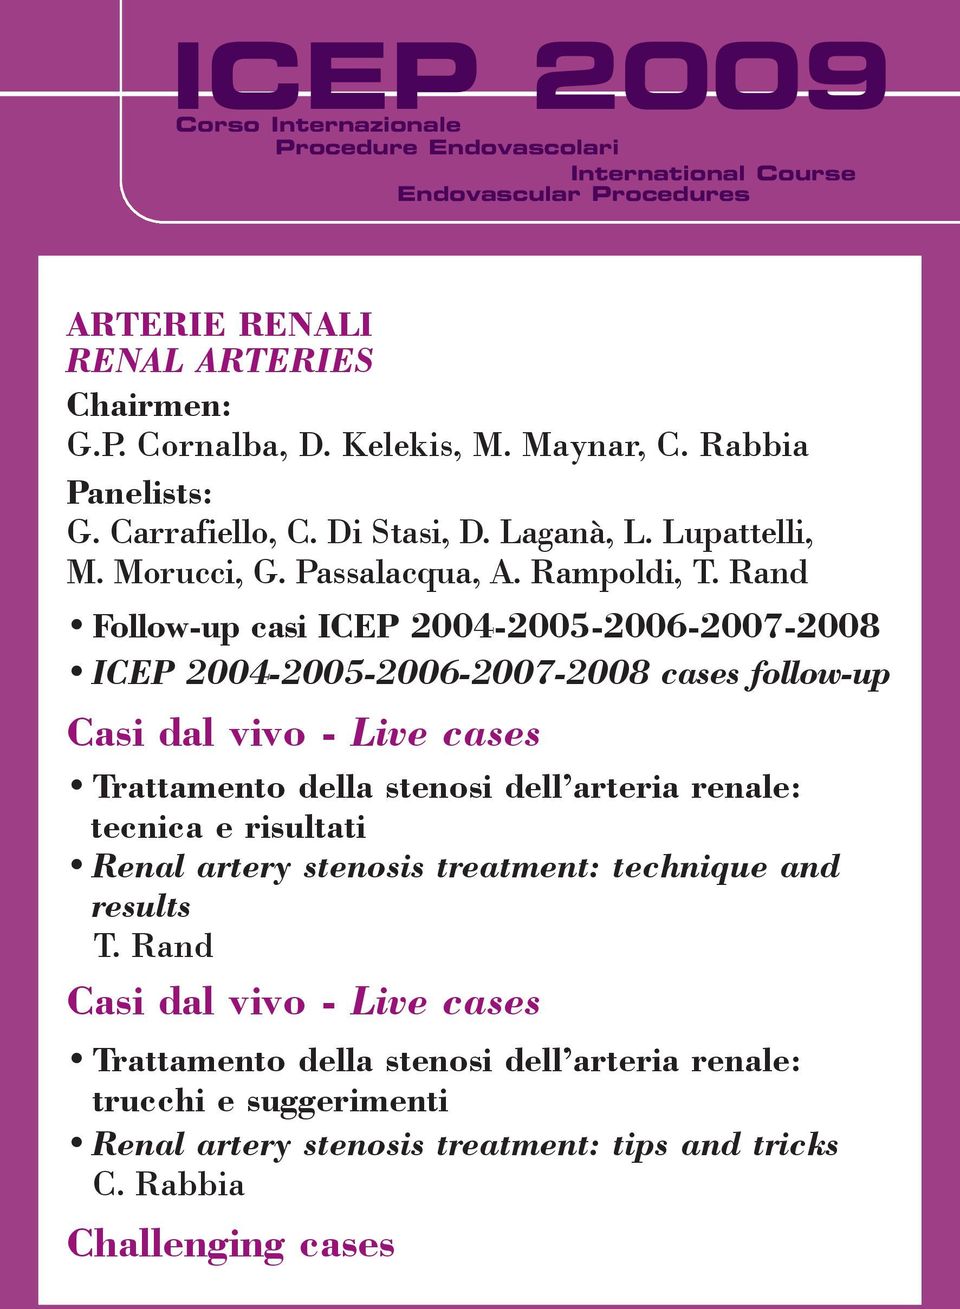 Rand Follow-up casi ICEP 2004-2005-2006-2007-2008 ICEP 2004-2005-2006-2007-2008 cases follow-up Trattamento della stenosi dell arteria renale: tecnica e risultati